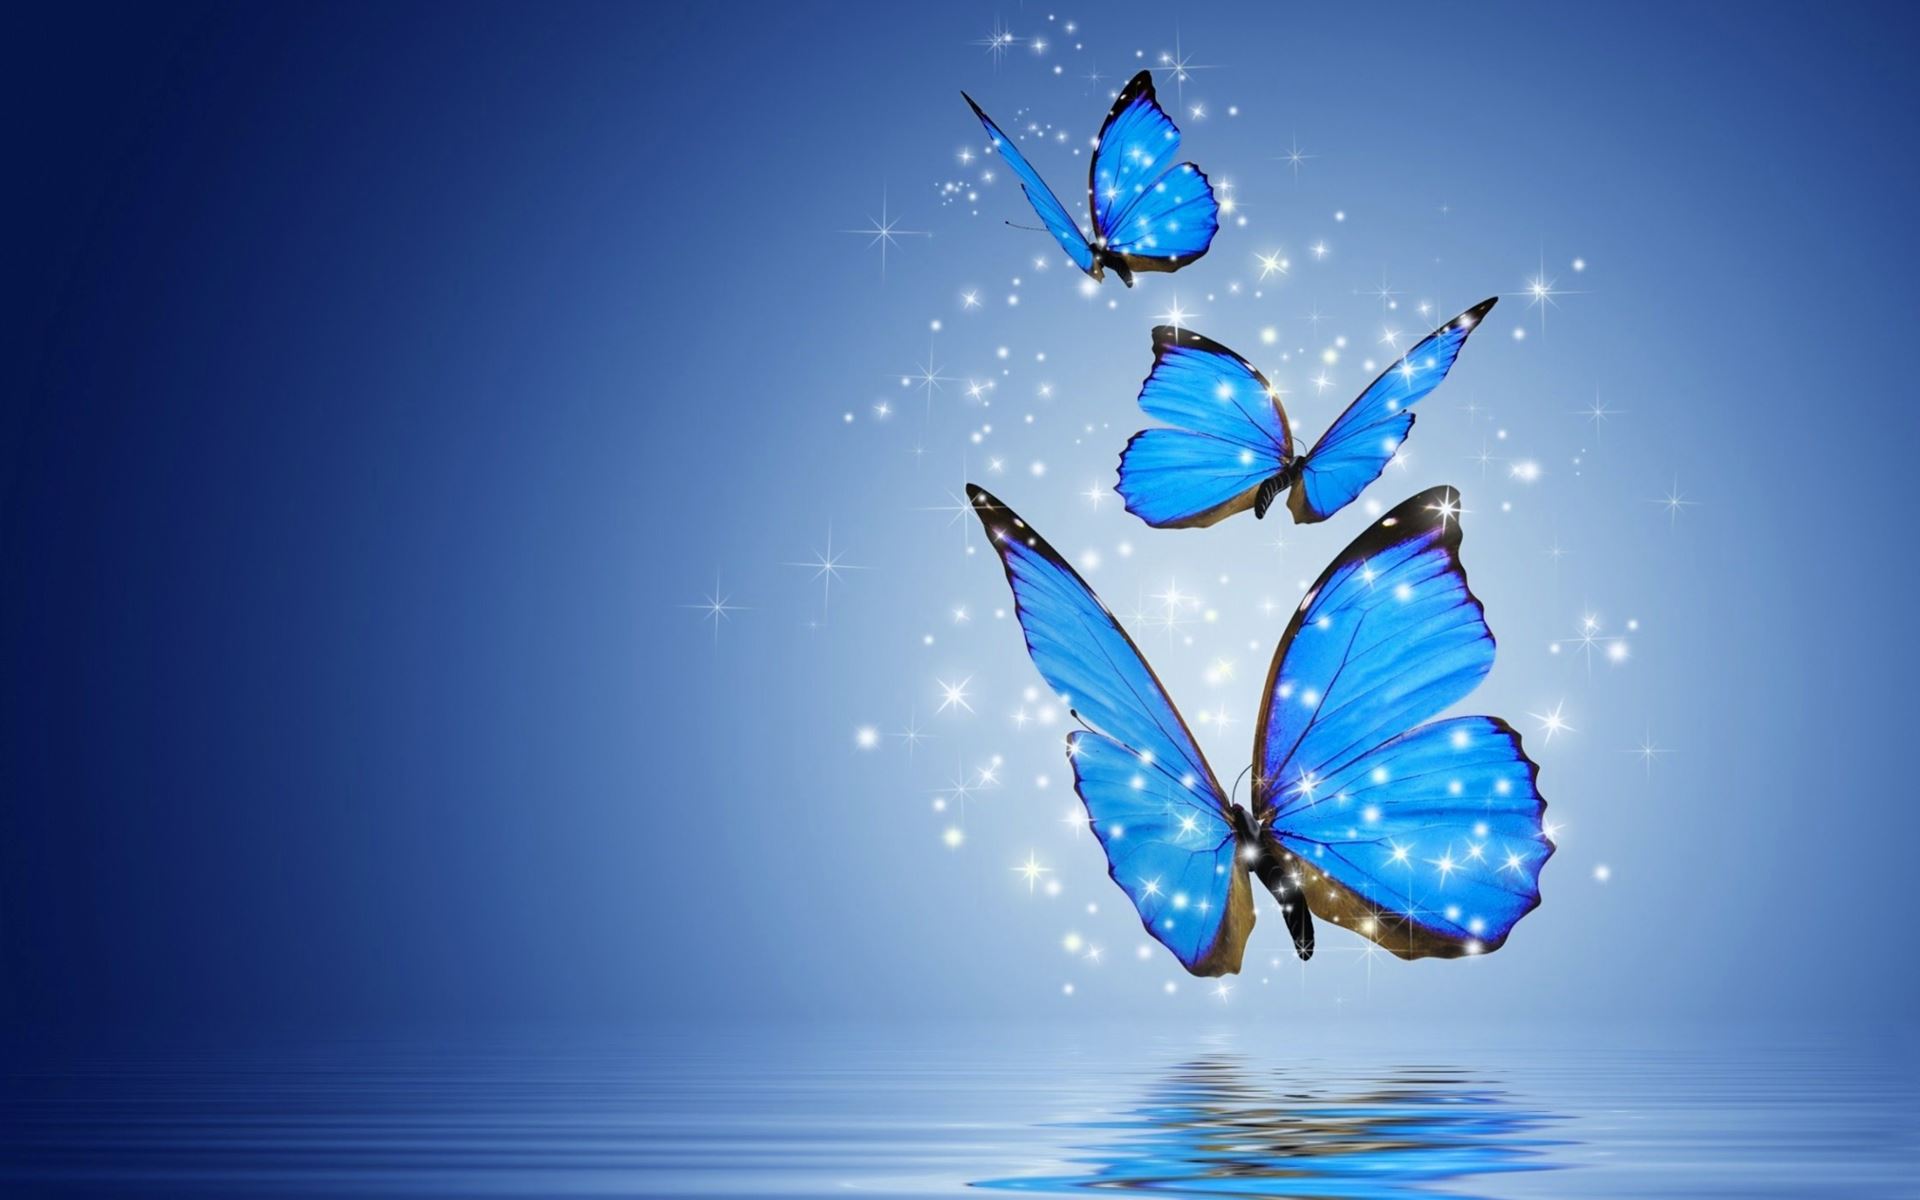 Chim bướm là những sinh vật xinh đẹp được ưa thích bởi sự dịu dàng và mê hoặc. Hãy để những hình nền chim bướm đẹp mắt với nhiều màu sắc đậm nét làm cho máy tính của bạn trở nên cuốn hút và đáng yêu hơn bao giờ hết!